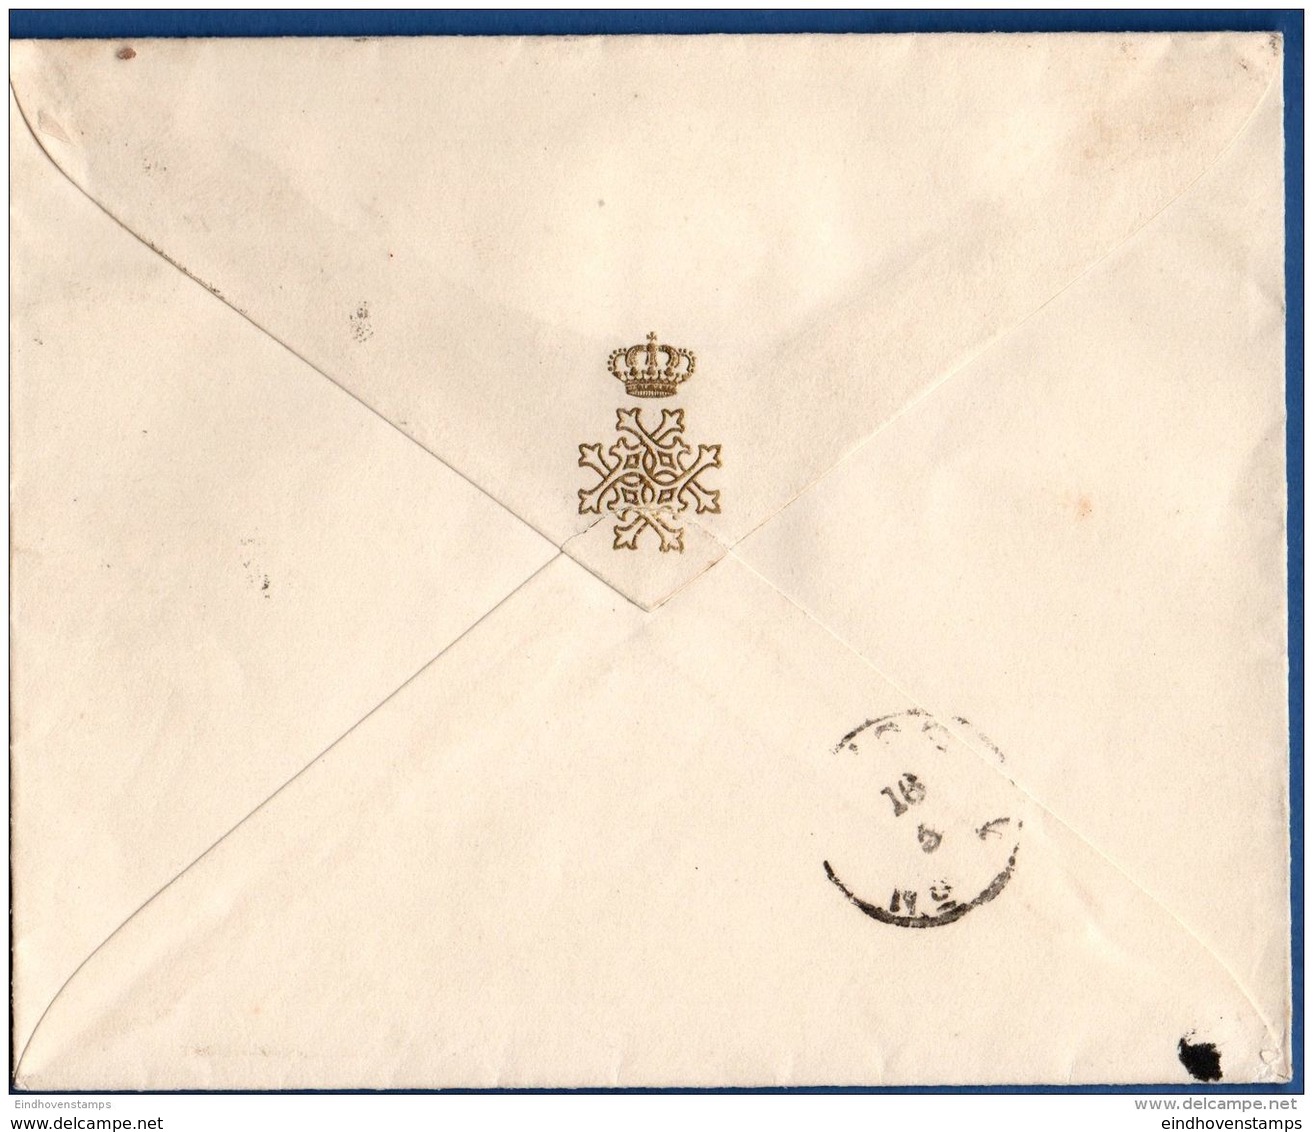 Danmark Kjobenhavn 1878, 20 Ore On Letter To Prince Moritz Von Sachsen-Altenburg, By Helmuth Von Hardenberg ? - Storia Postale